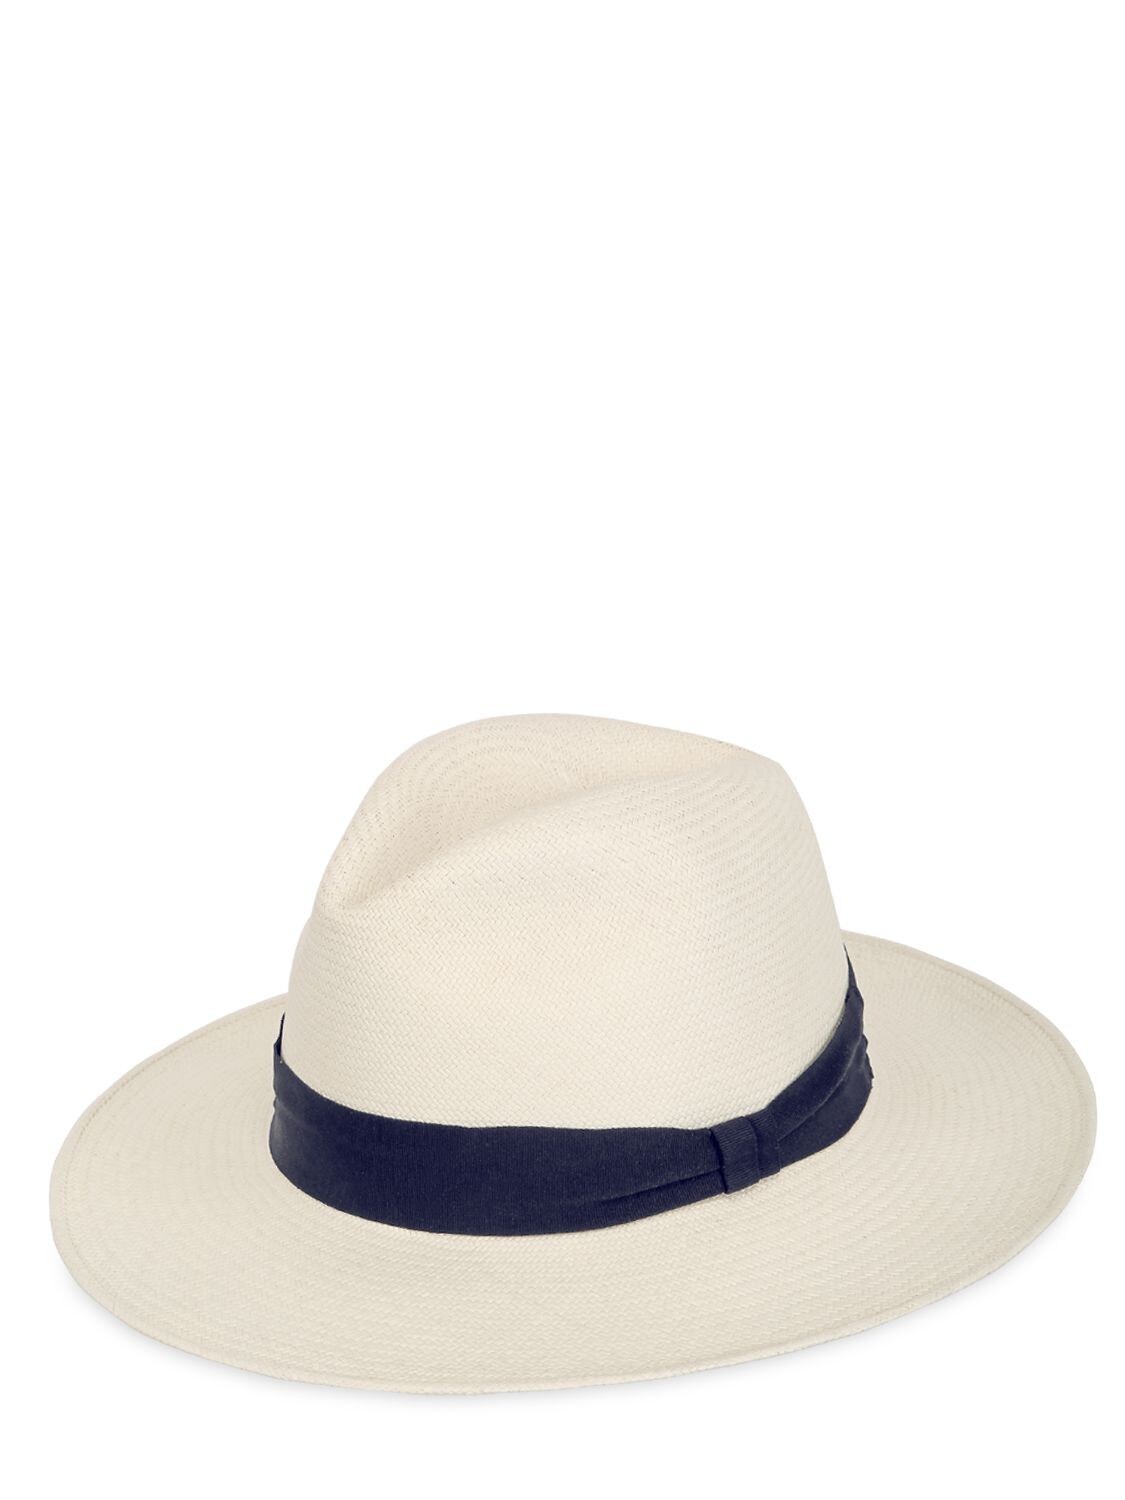 Frescobol Carioca Ecuadorian Panama Straw Hat In White,navy